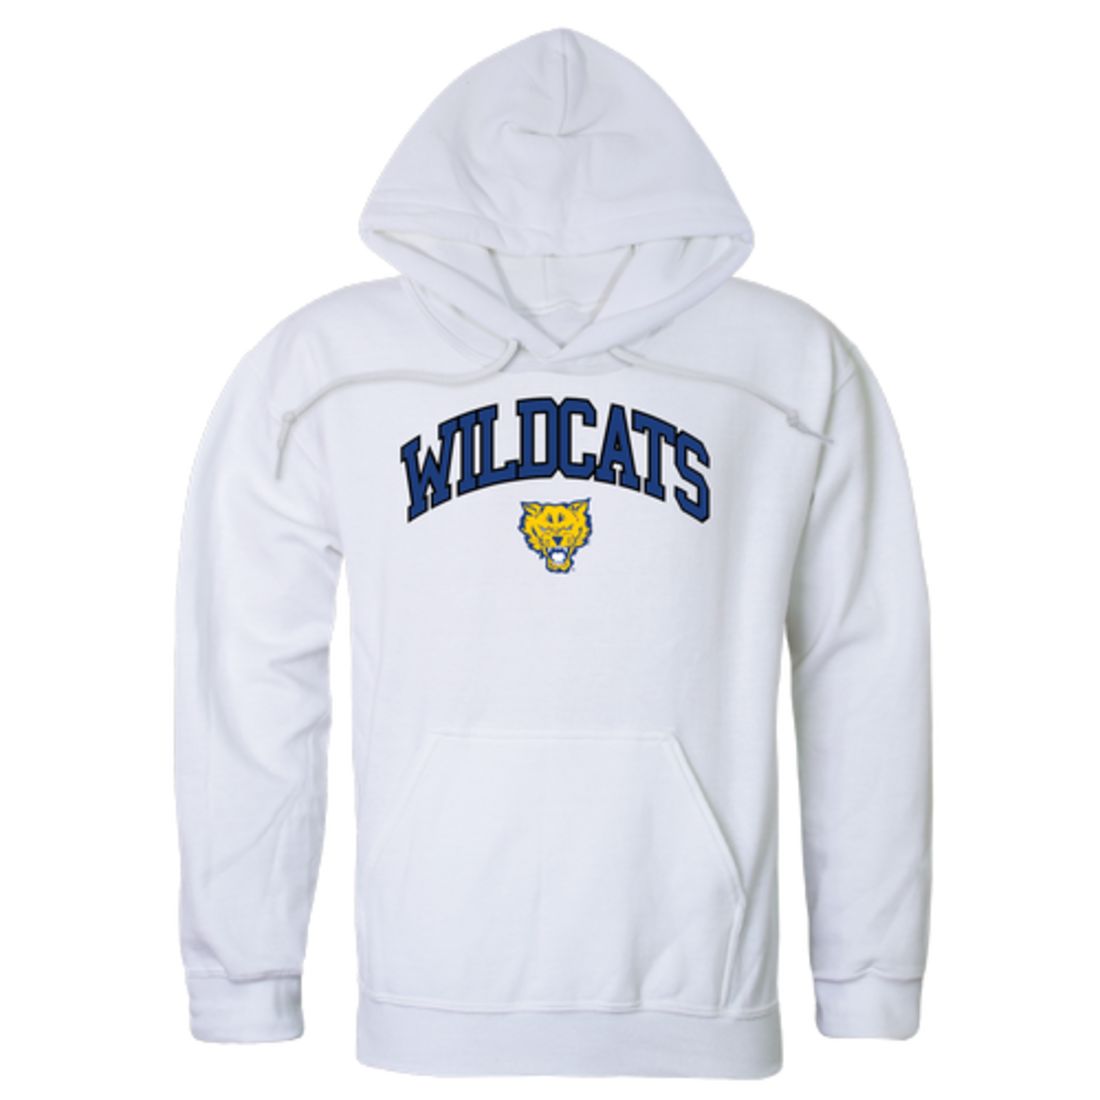 Fort-Valley-State-University-Wildcats-Campus-Fleece-Hoodie-Sweatshirts